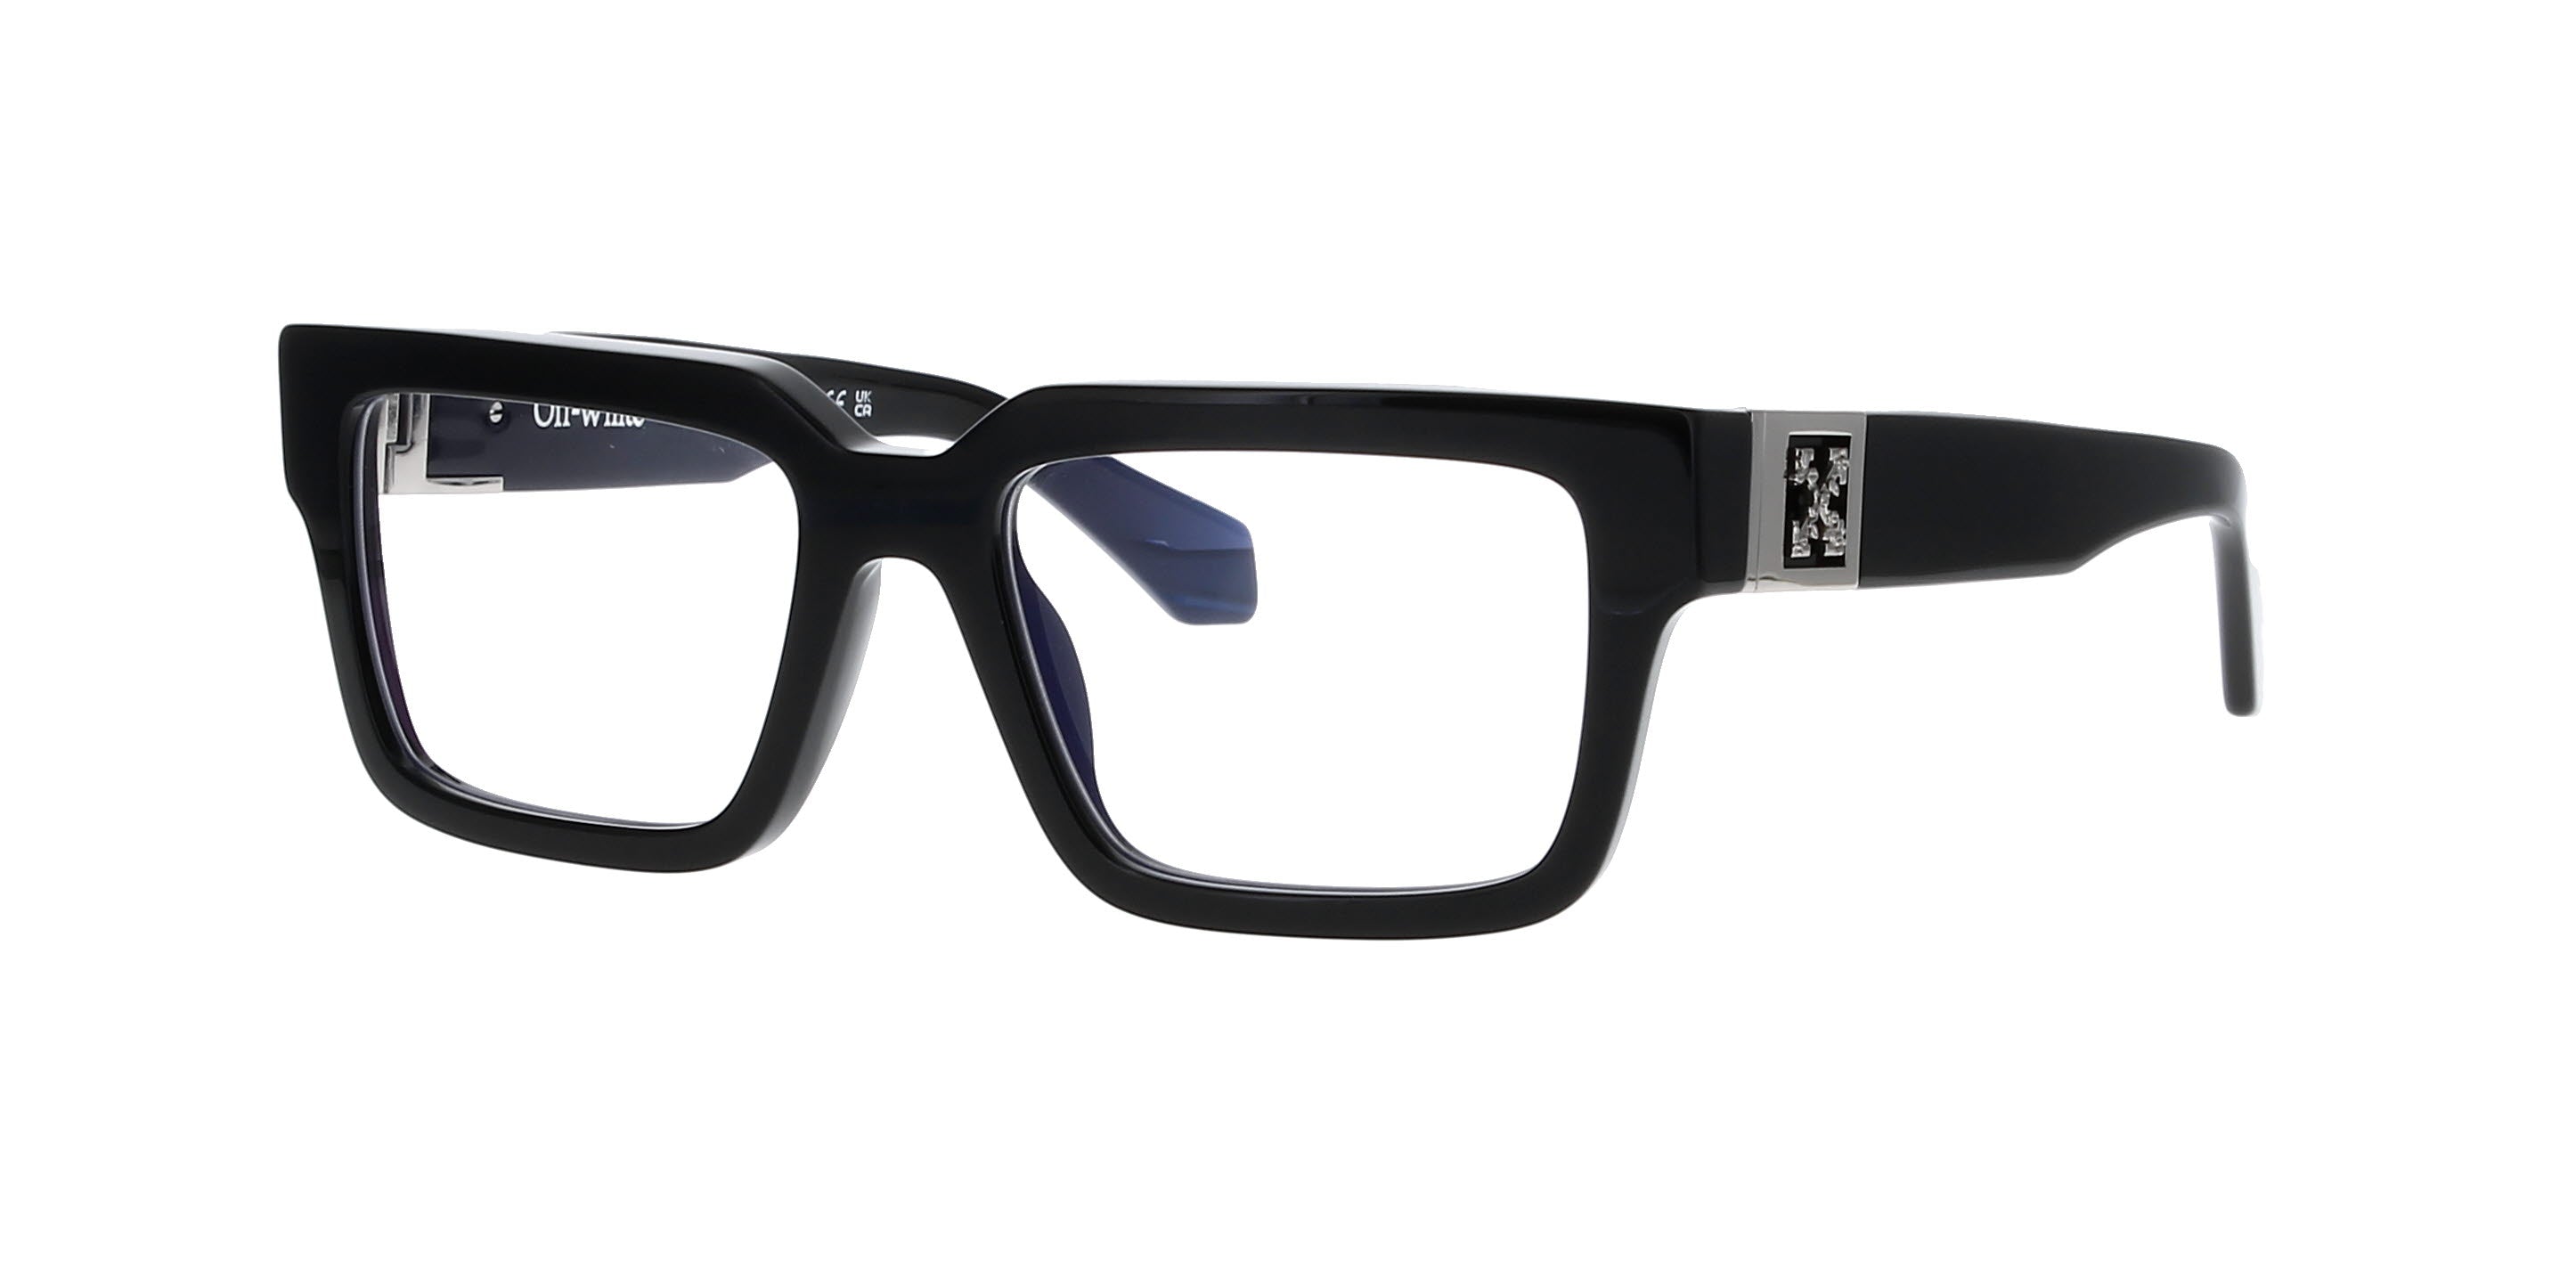 Off-White Style 15 Oerj015 Rectangle Glasses | Fashion Eyewear US